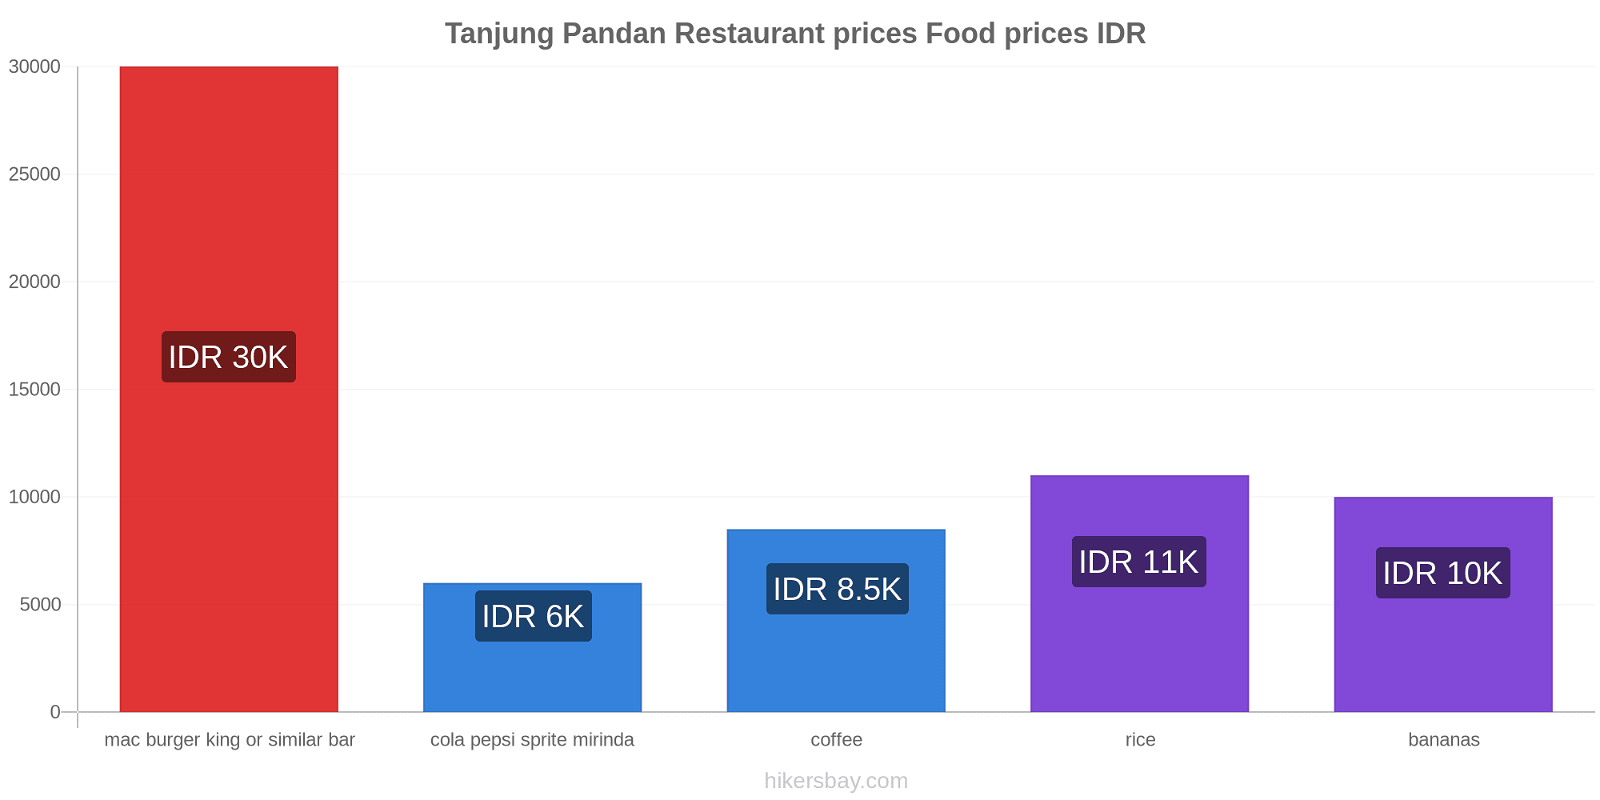 Tanjung Pandan price changes hikersbay.com